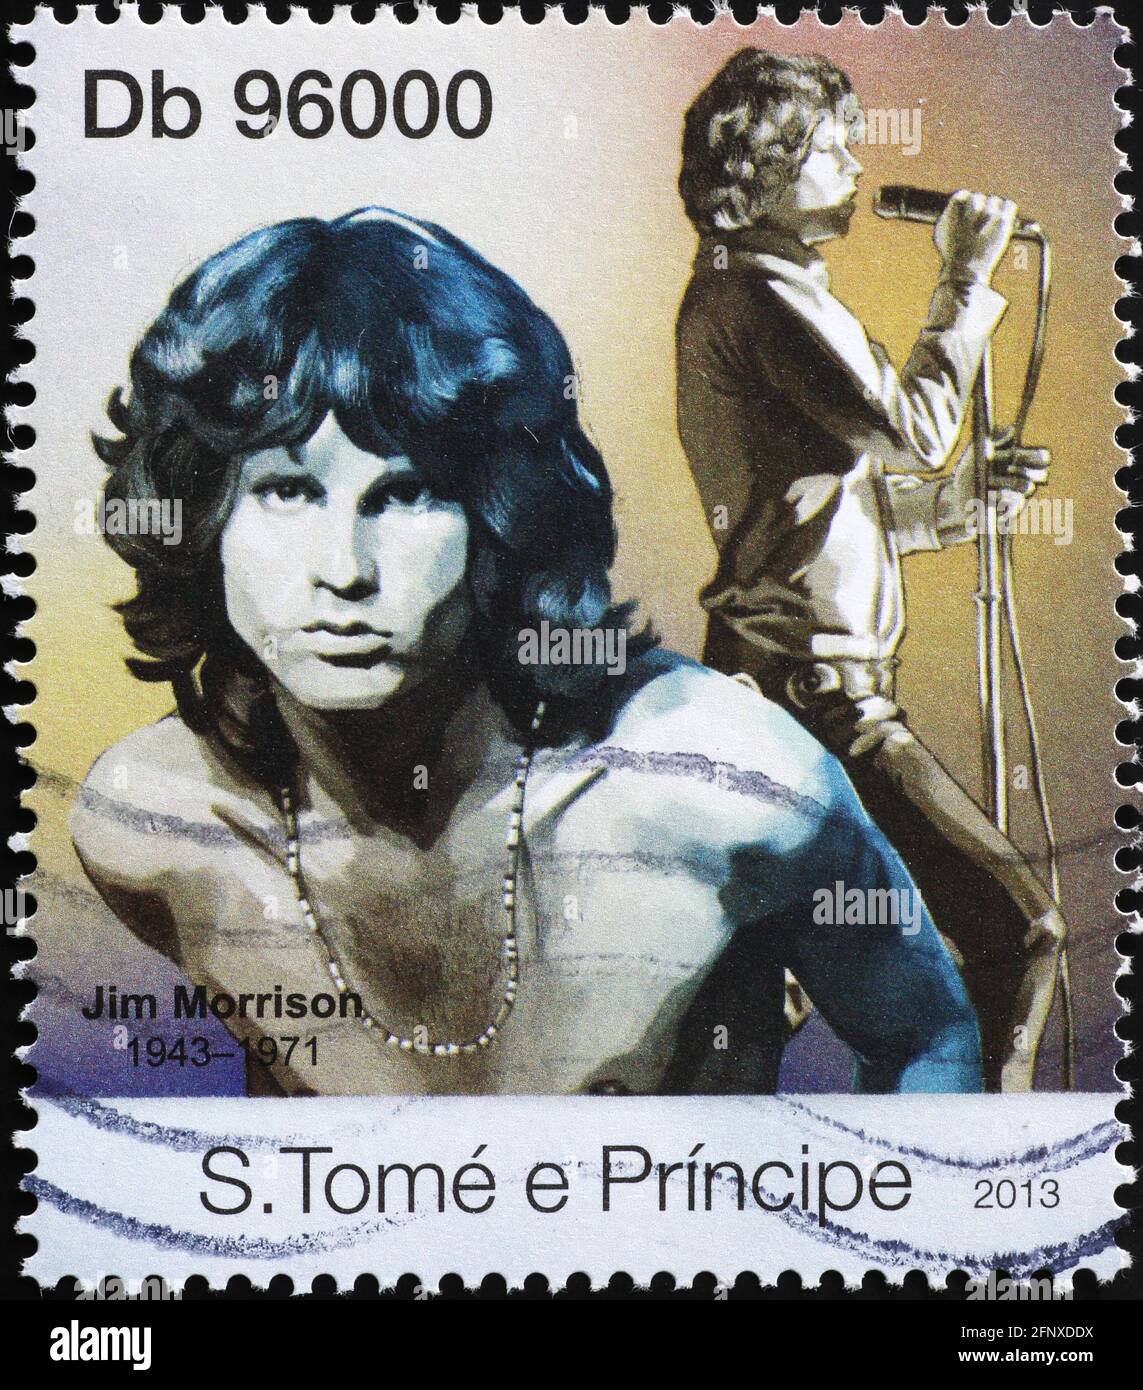 Jim Morrison des portes sur le timbre-poste Banque D'Images